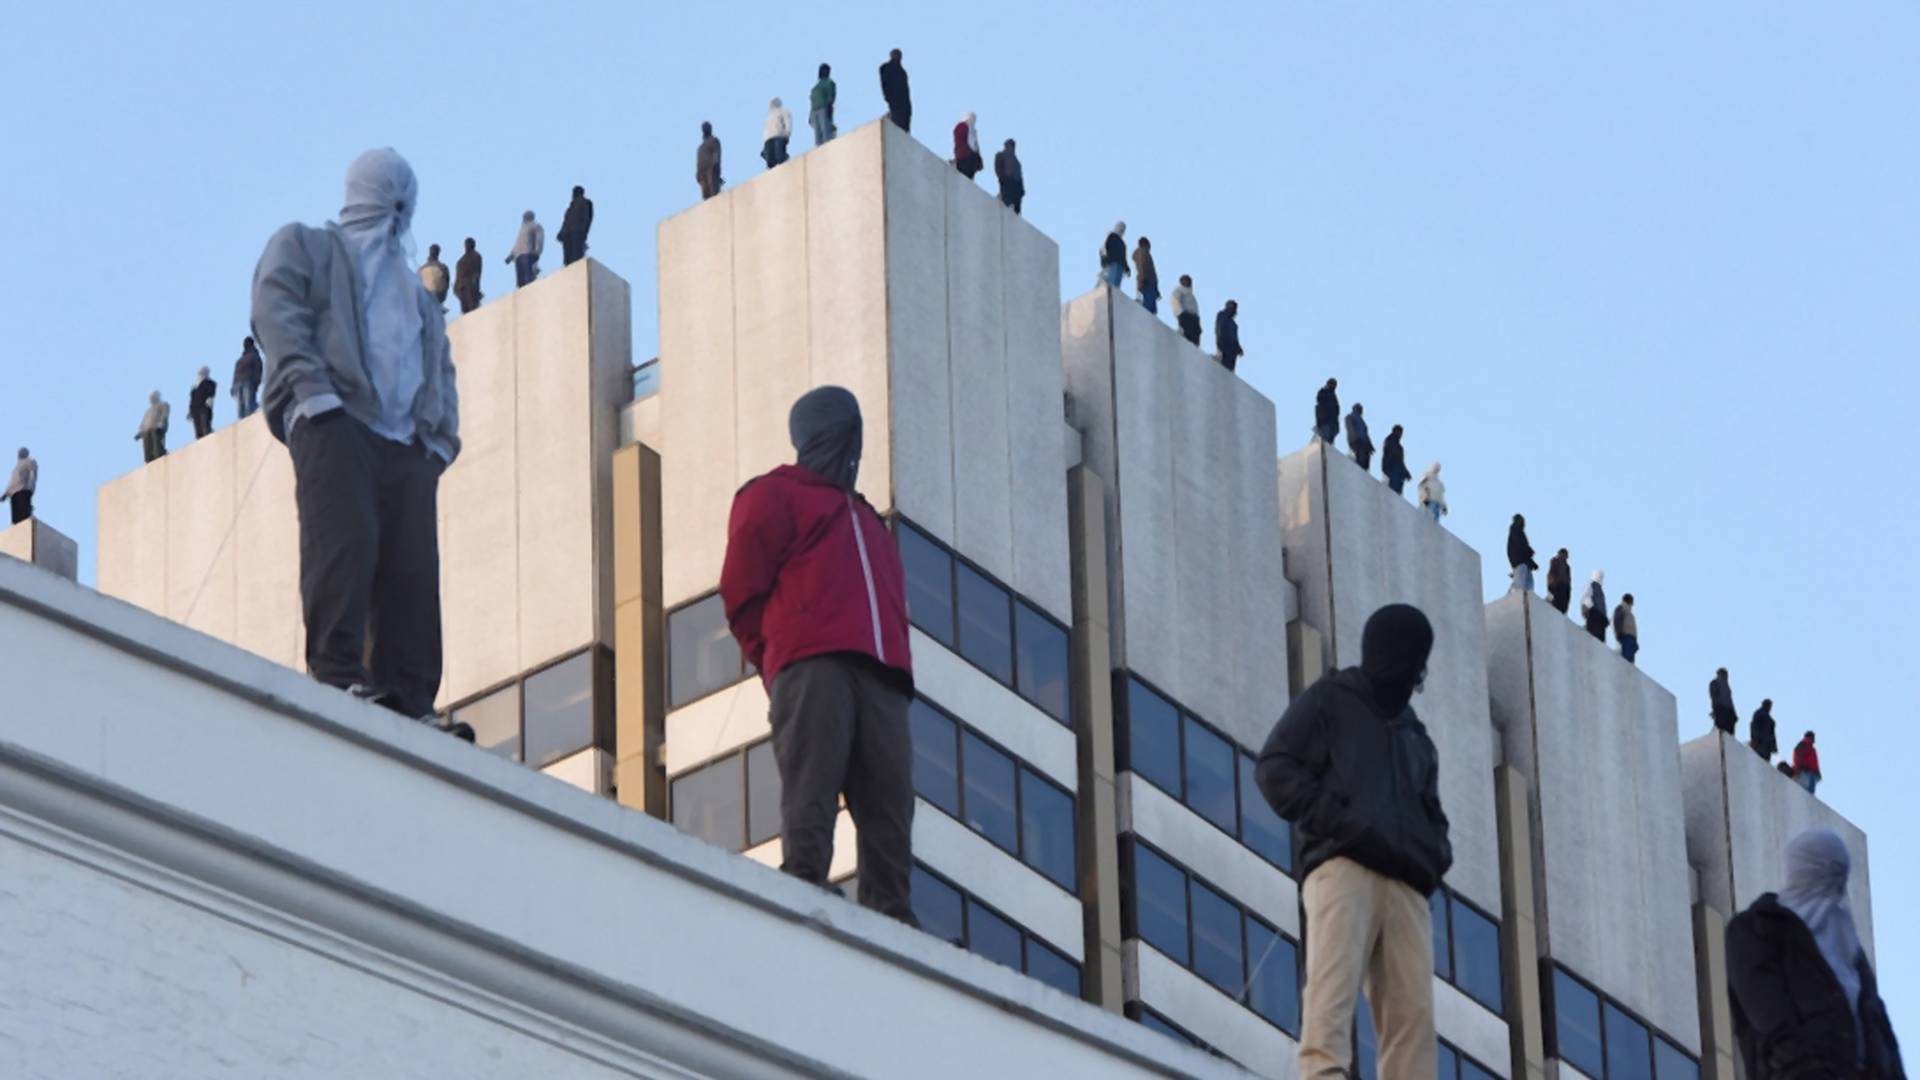 84 "samobójców" na dachach budynków. Świetna i szokująca instalacja amerykańskiego artysty